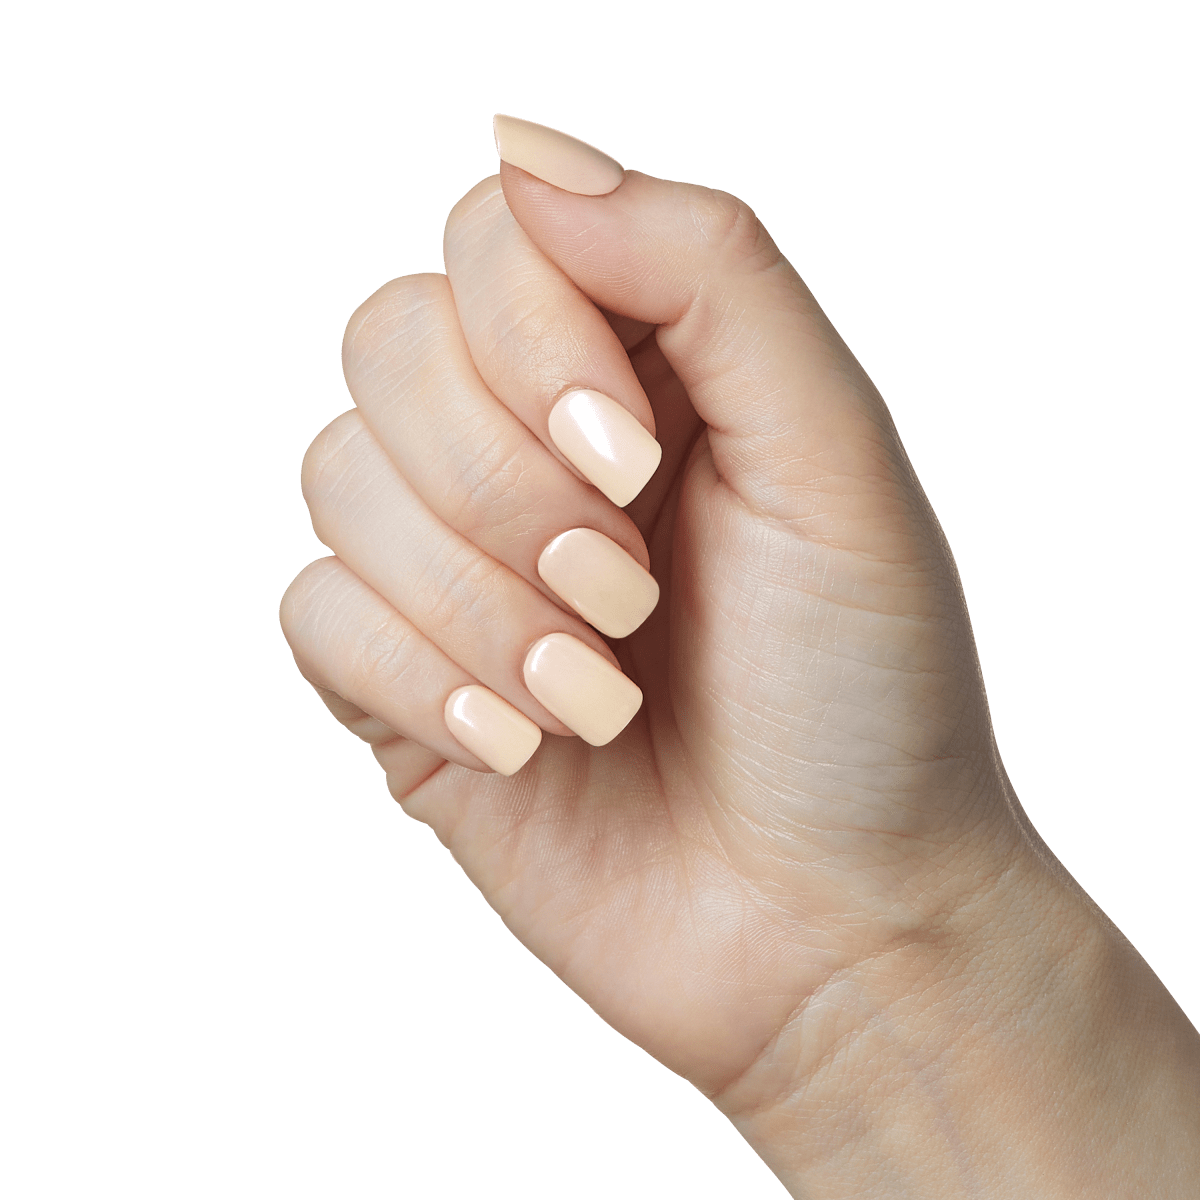 A Beginners Guide to Nail Shape Selection - Ohana Beauty & Wellness Spa